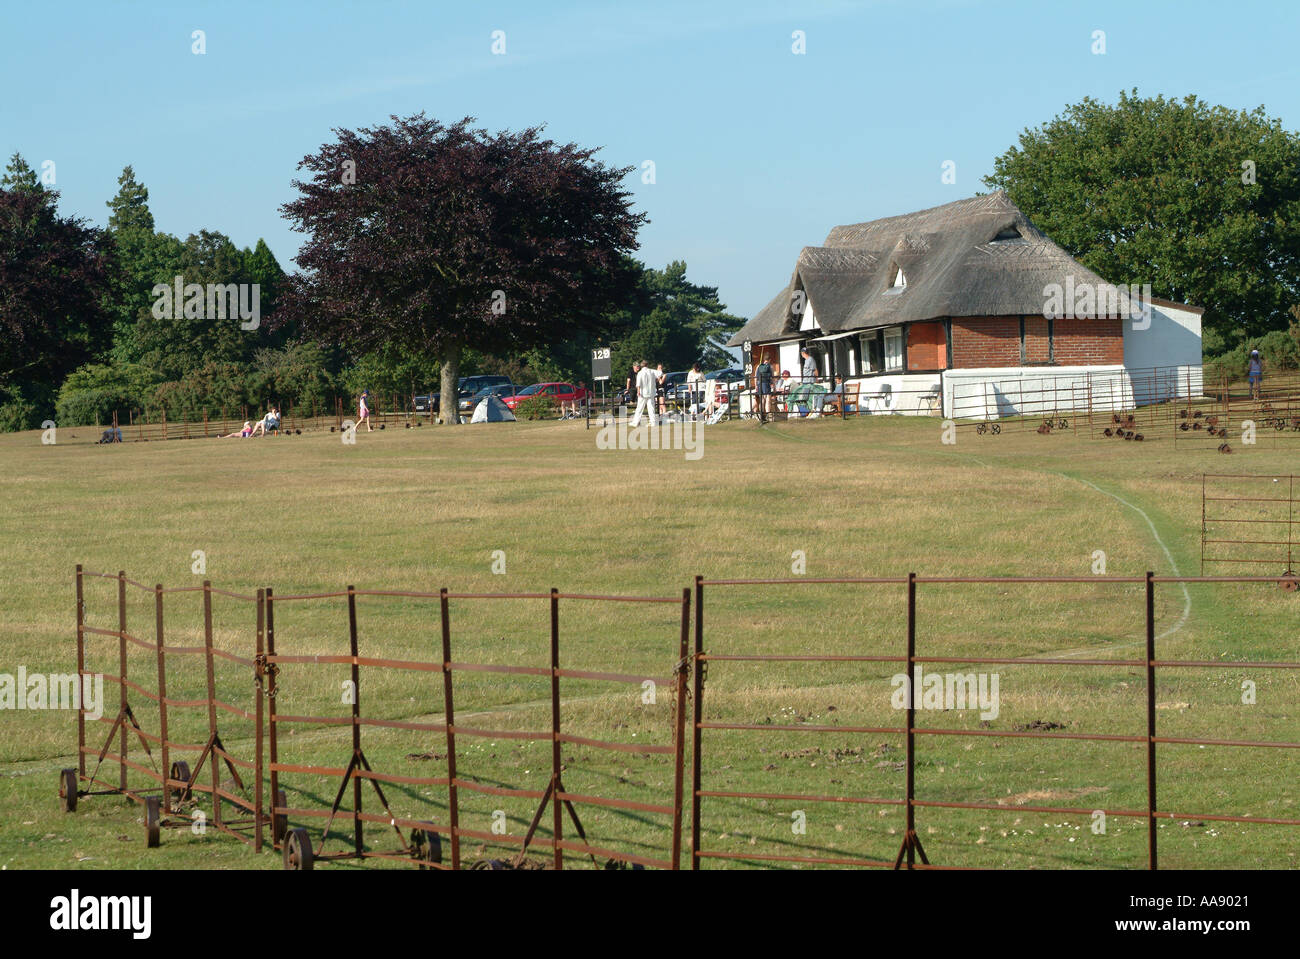 Cricket Pavilion and Players at Lyndhurst Club Hampshire England United Kingdom UK Stock Photo